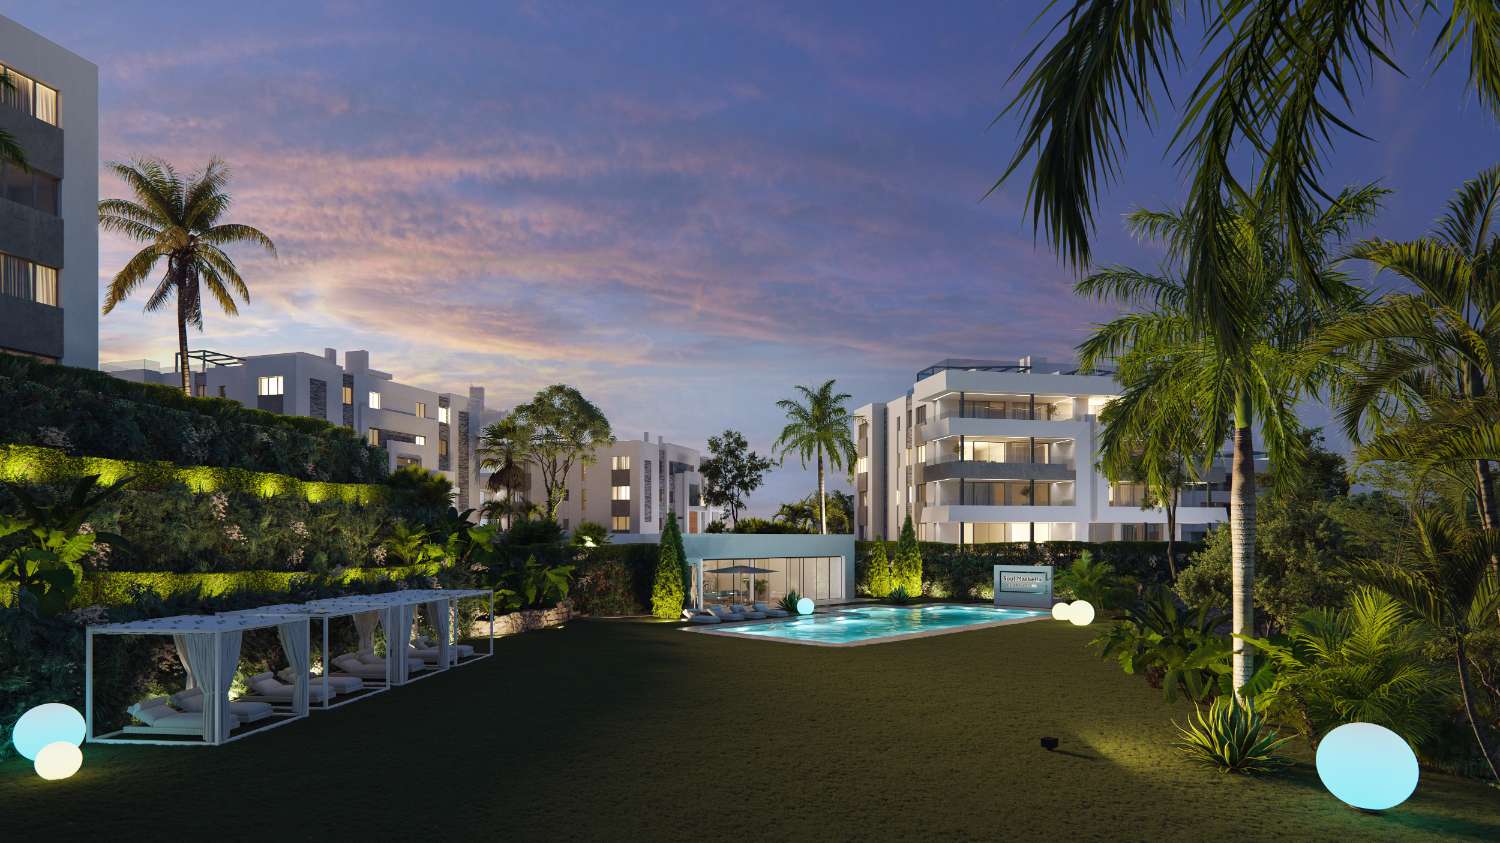 Luxuriöse Wohnung in Marbella, Erdgeschoss mit privatem Garten in Urbanisation in der ersten Reihe des Golfplatzes